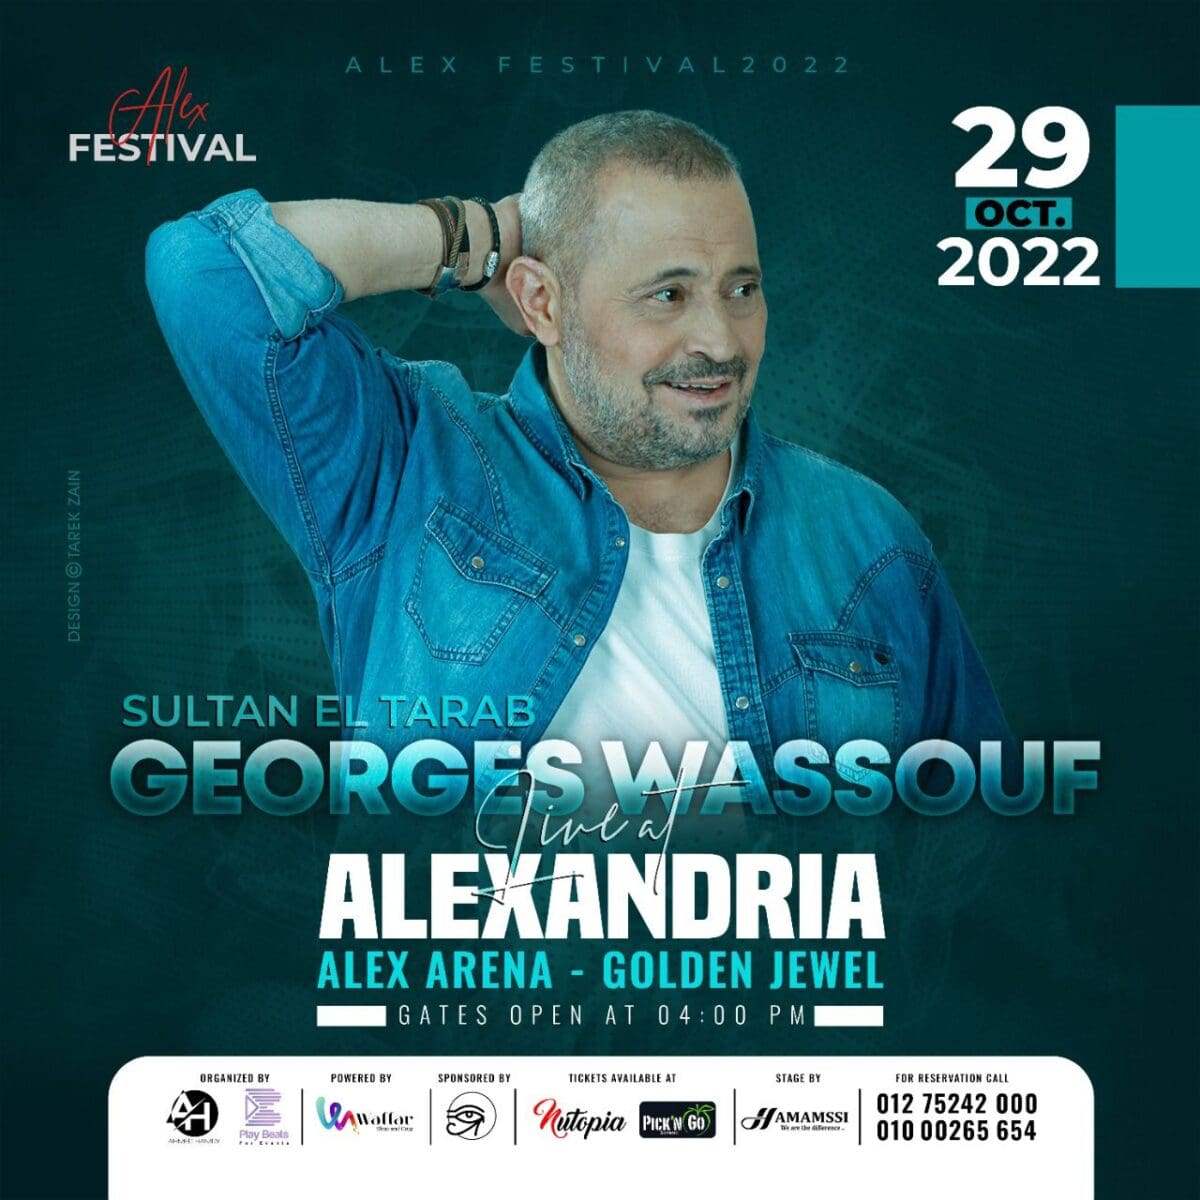 أسعار وأماكن بيع تذاكر حفل جورج وسوف في الاسكندرية يوم 29 أكتوبر